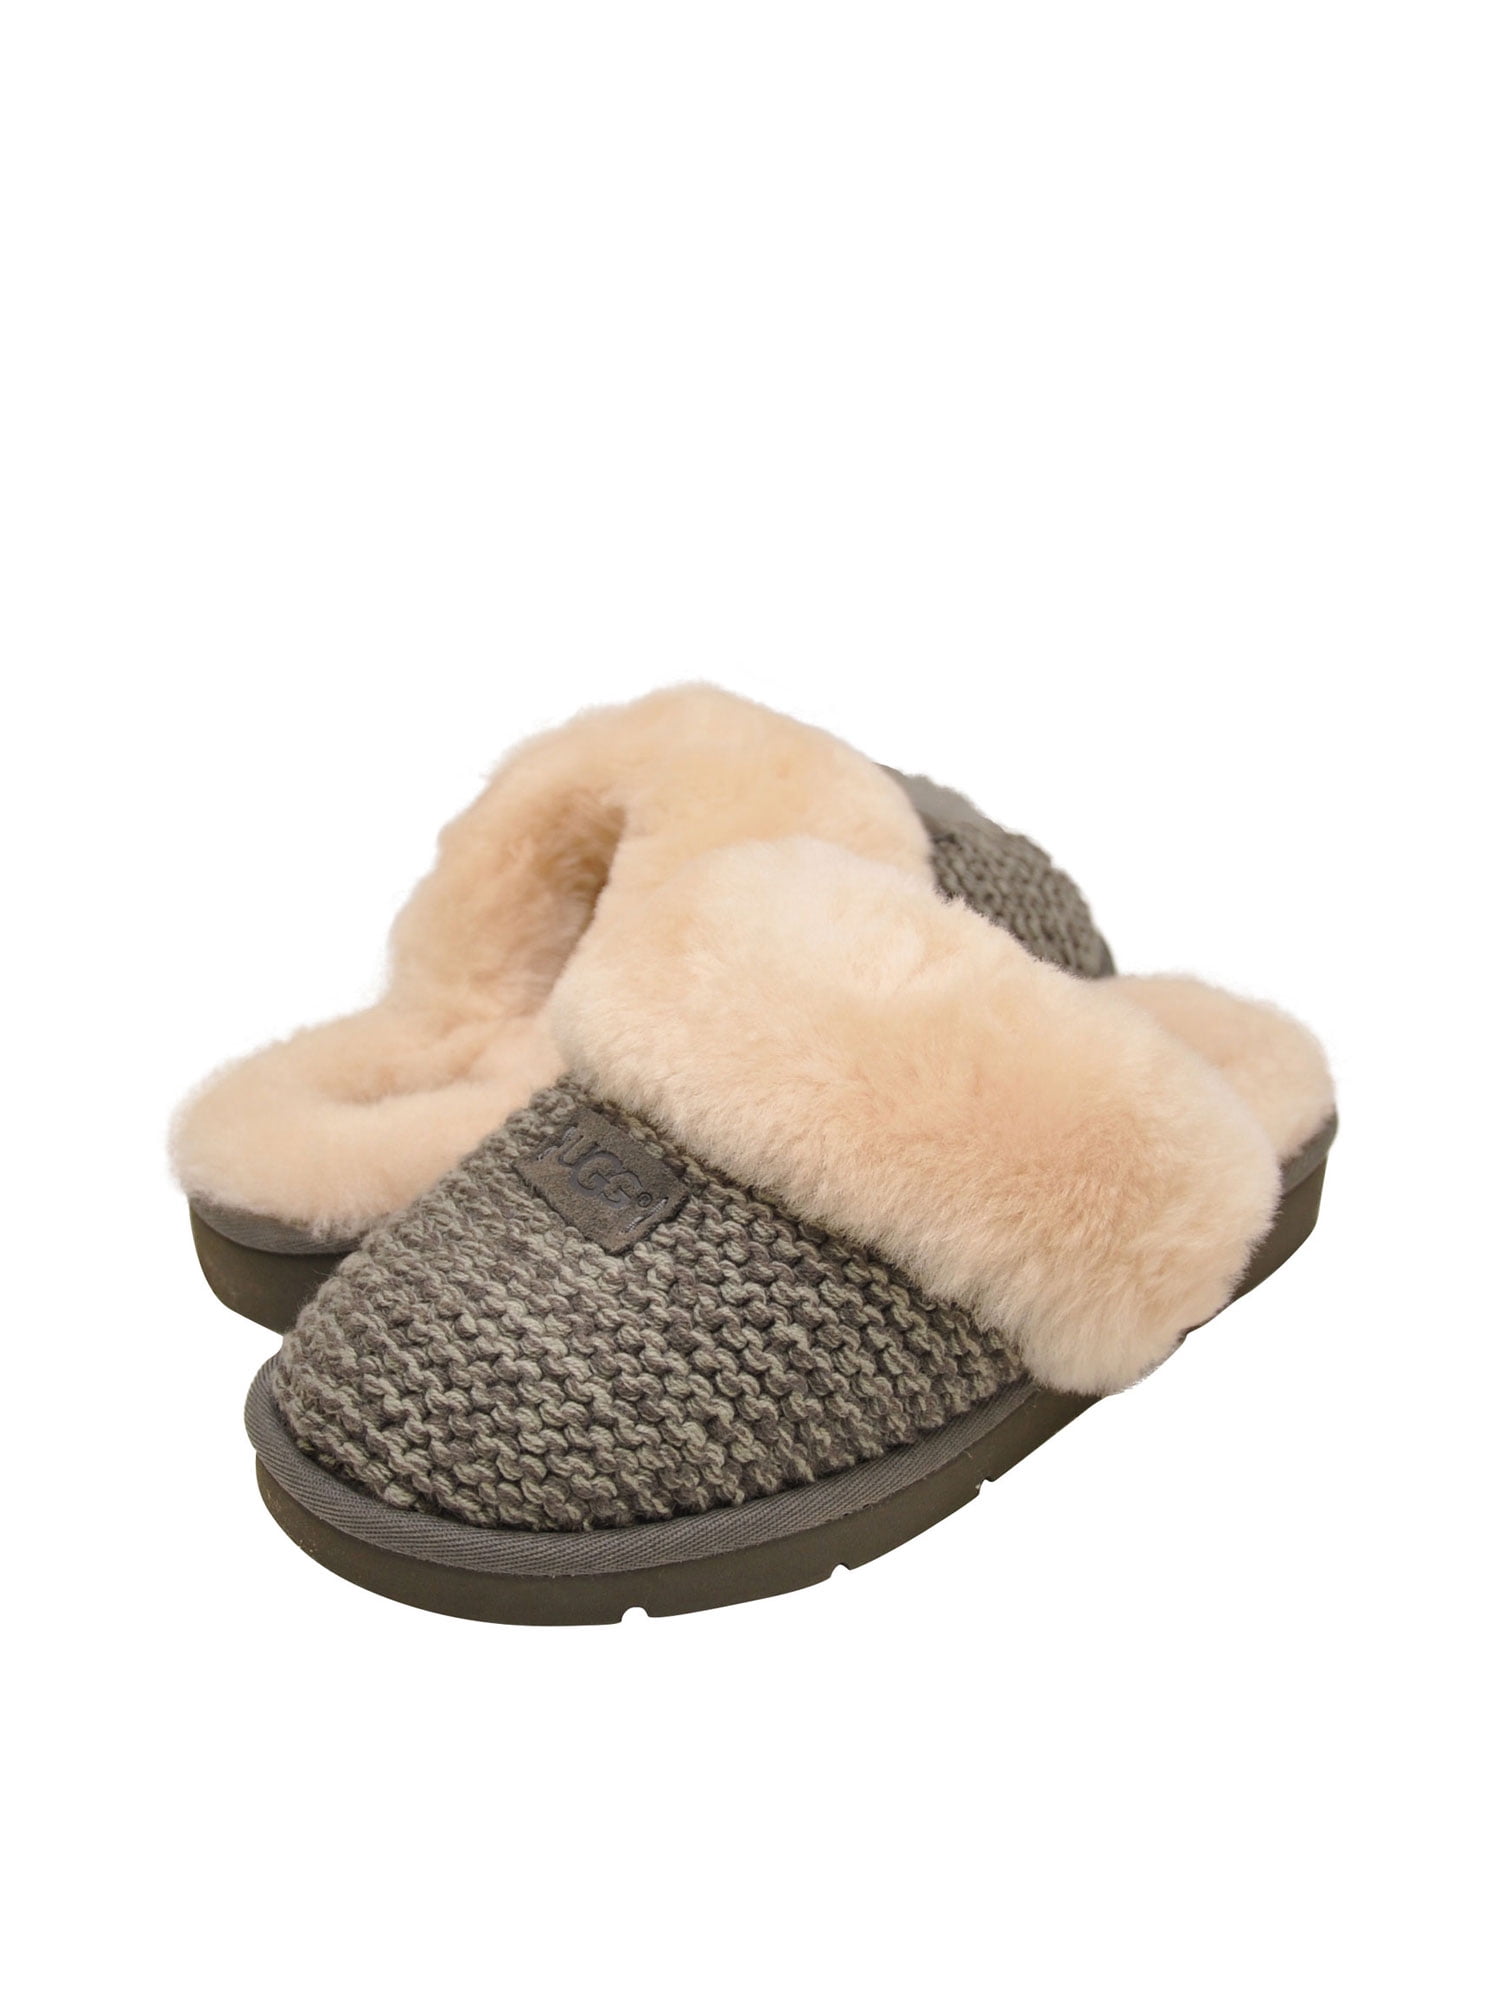 Buy > ugg cozy knit slipper > in stock